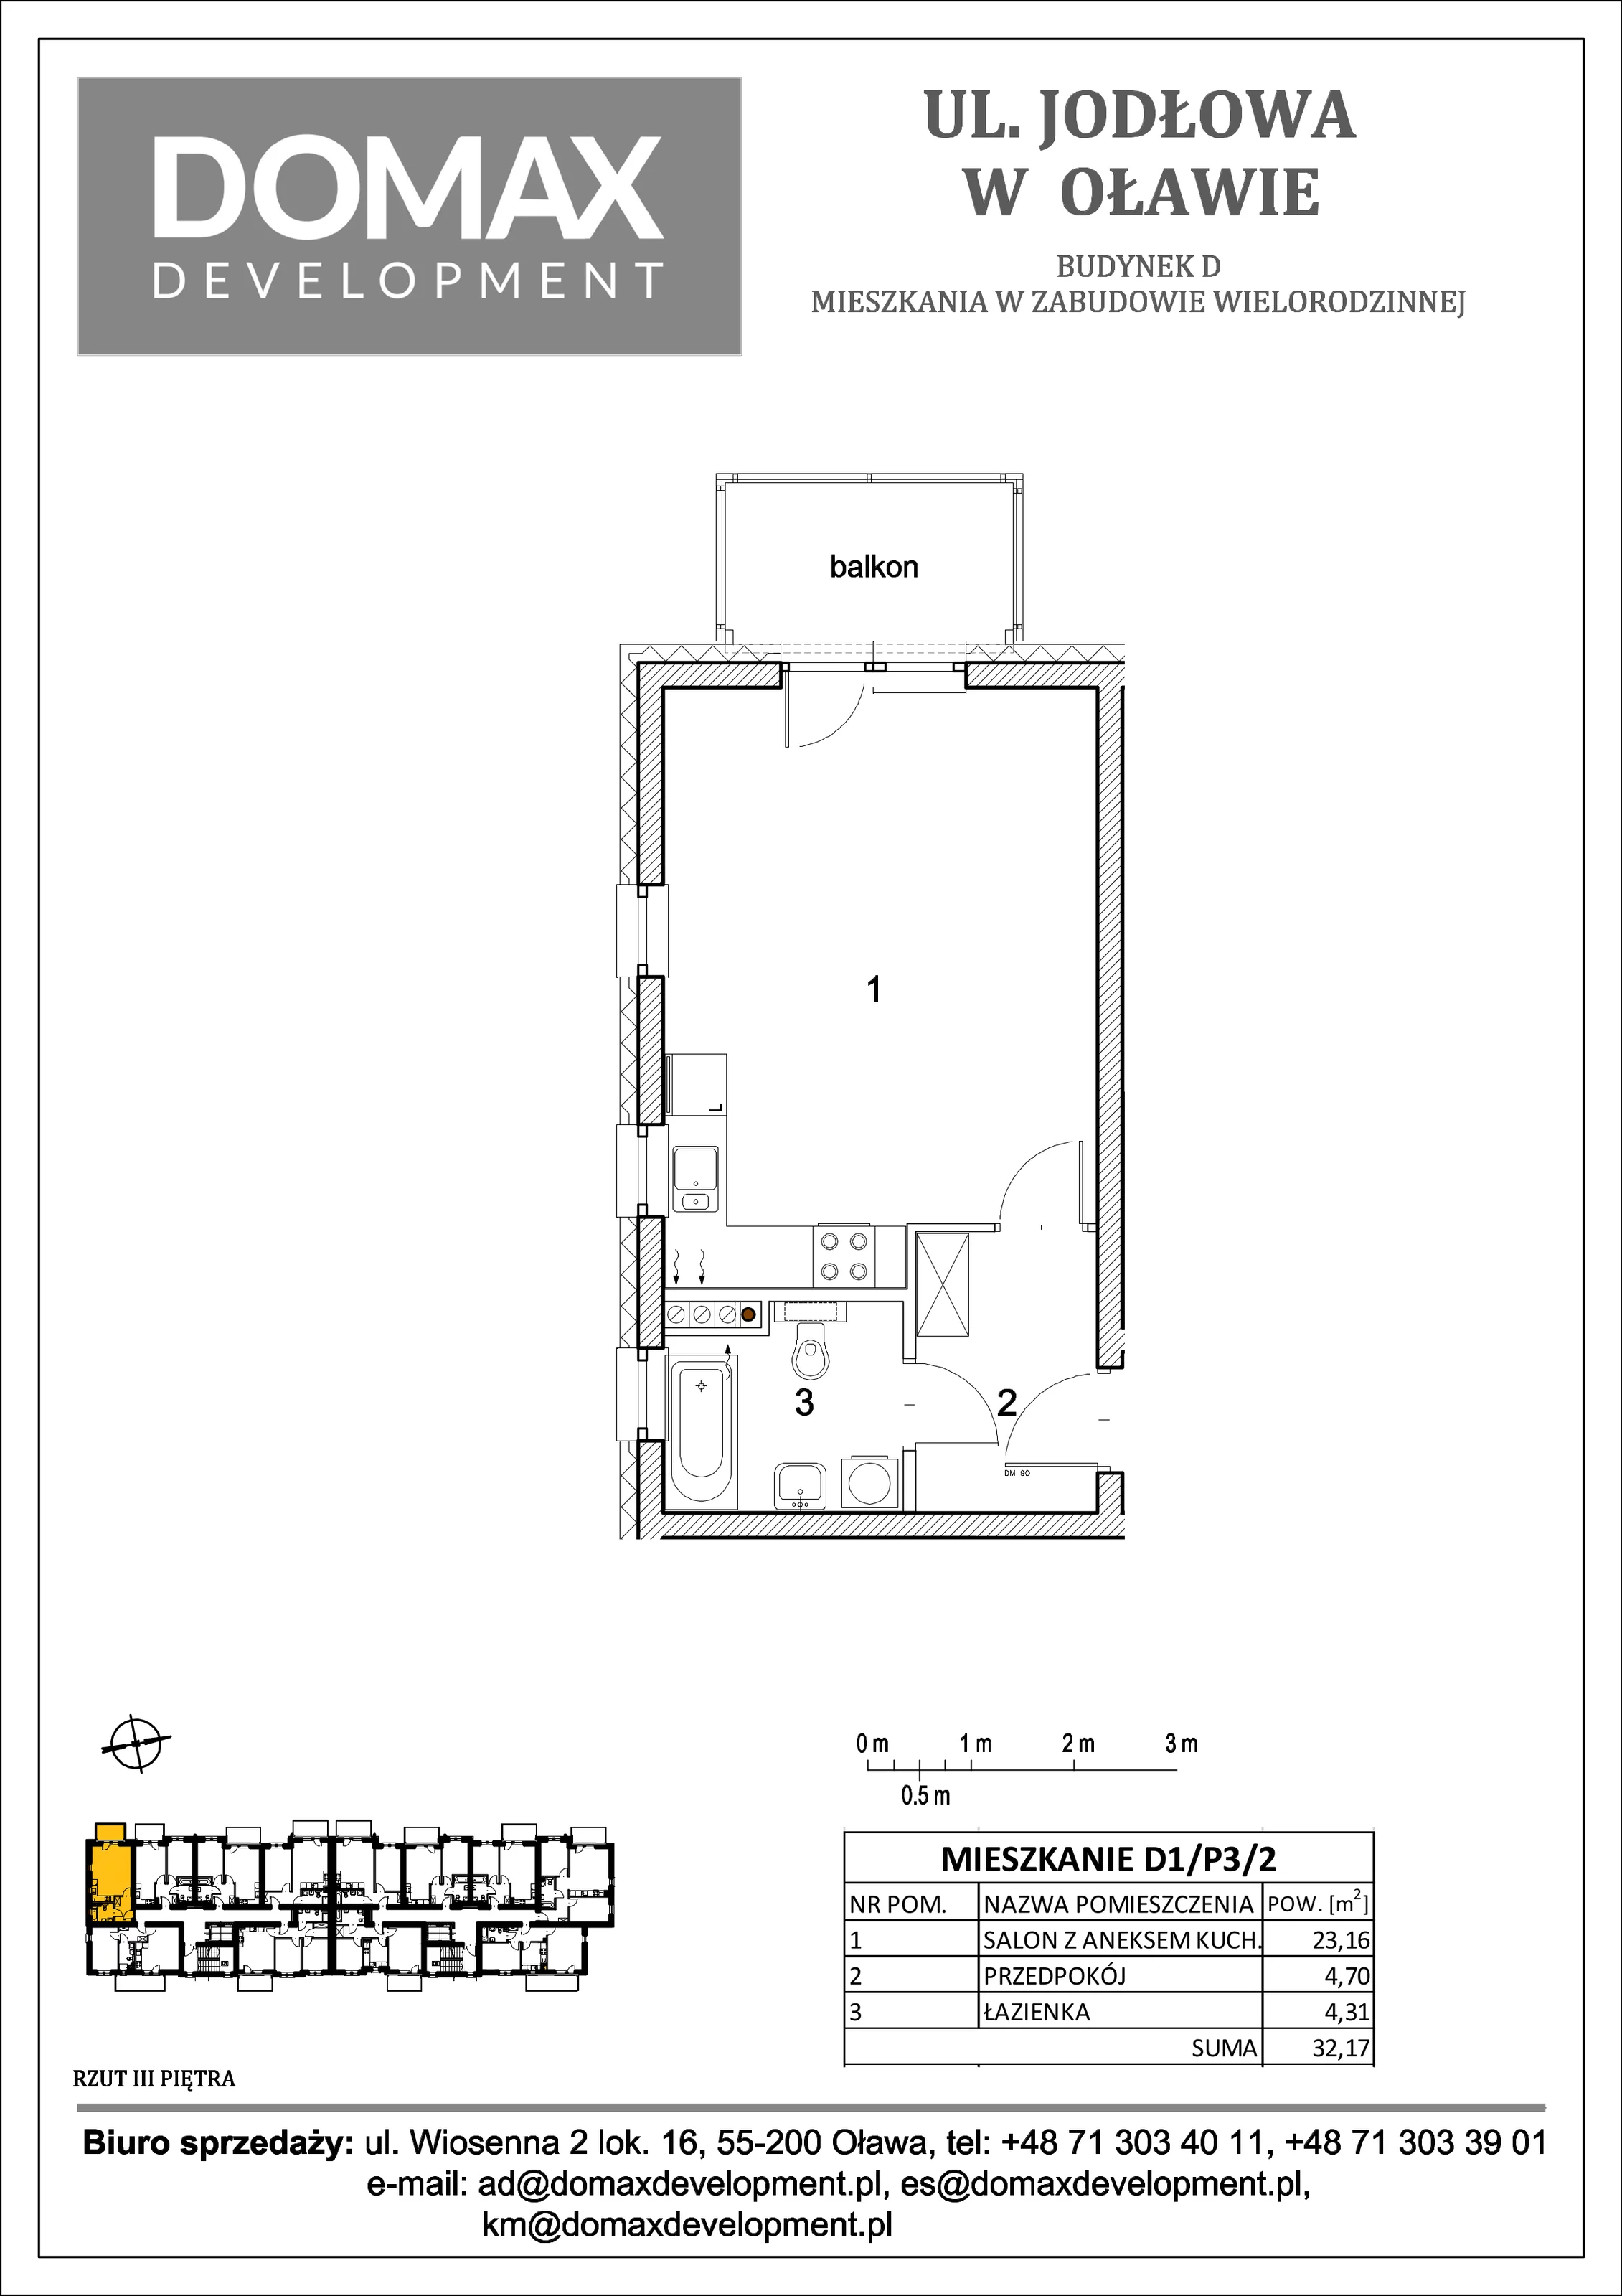 Mieszkanie 32,17 m², piętro 3, oferta nr D1/P3/2, Osiedle Jodłowa etap II, Oława, ul. Jodłowa